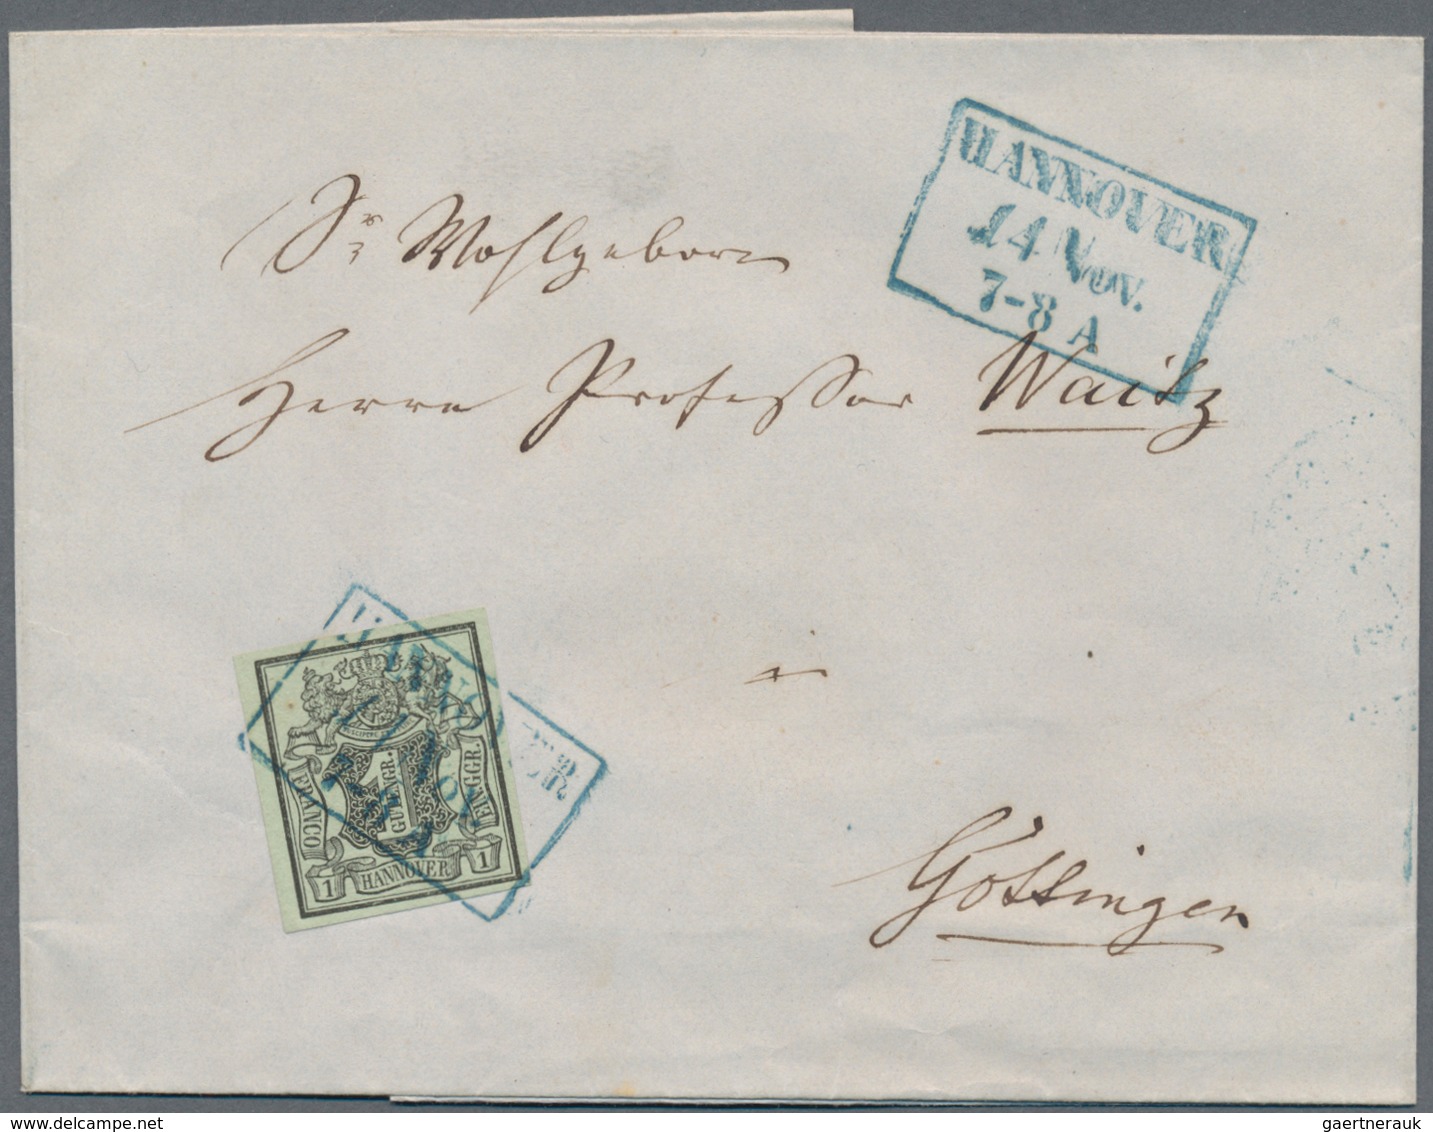 Deutschland: 1861 - 1910 (ca.), Partie von etwa 20 Rothschild-Briefen (teils Marken entfernt), dazu